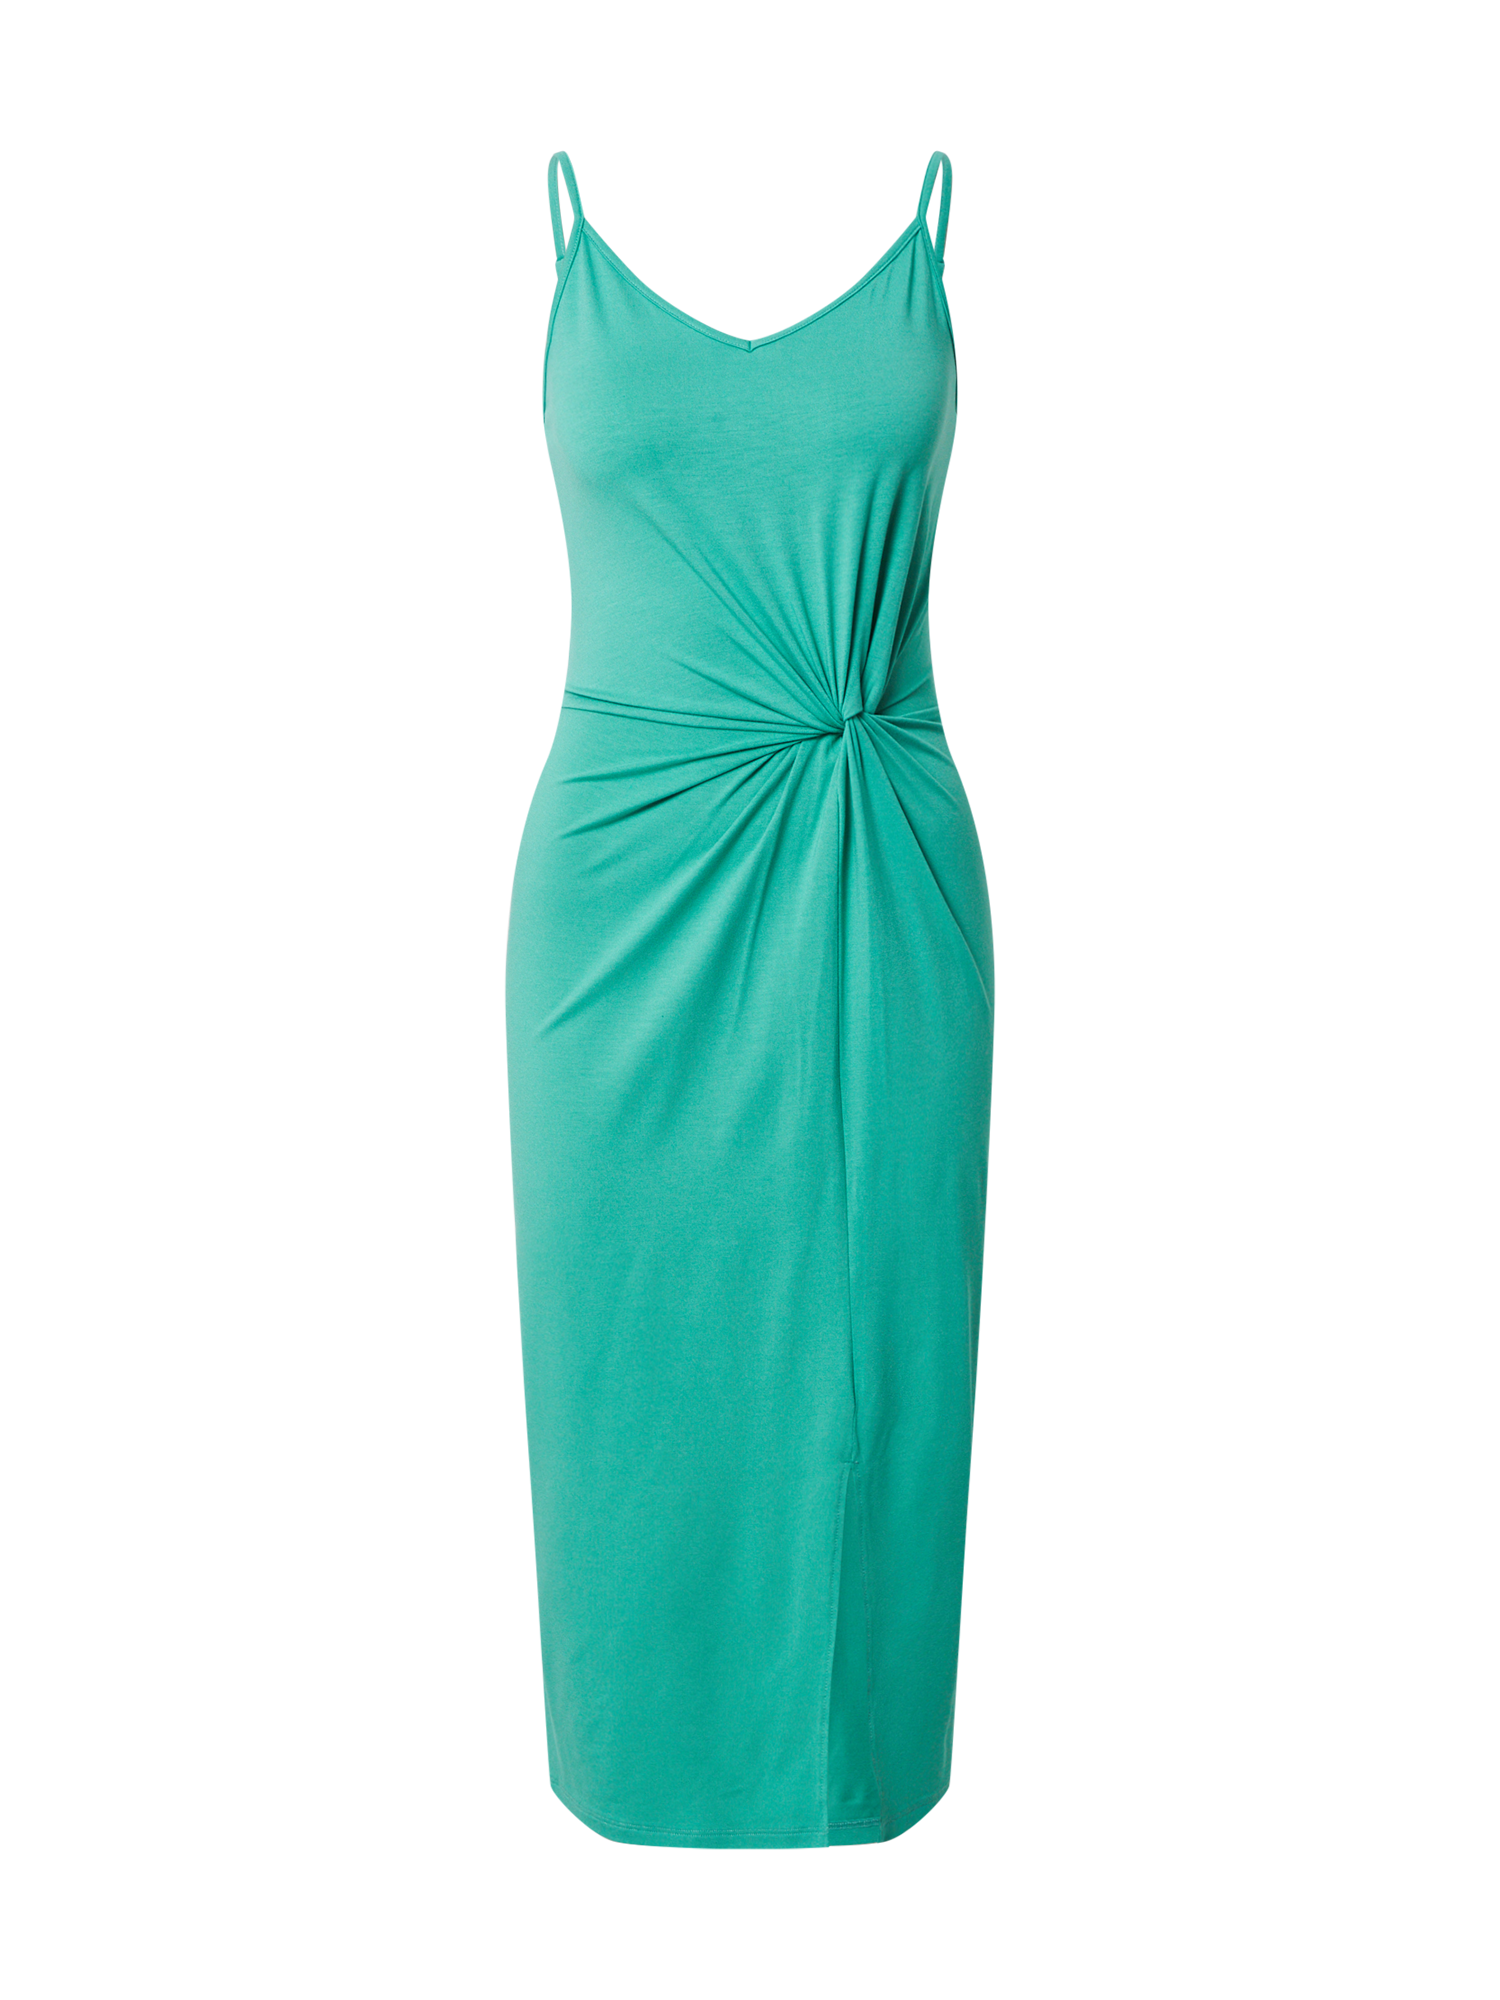 Odzież Kobiety EDITED Sukienka Maxine w kolorze Zielonym 